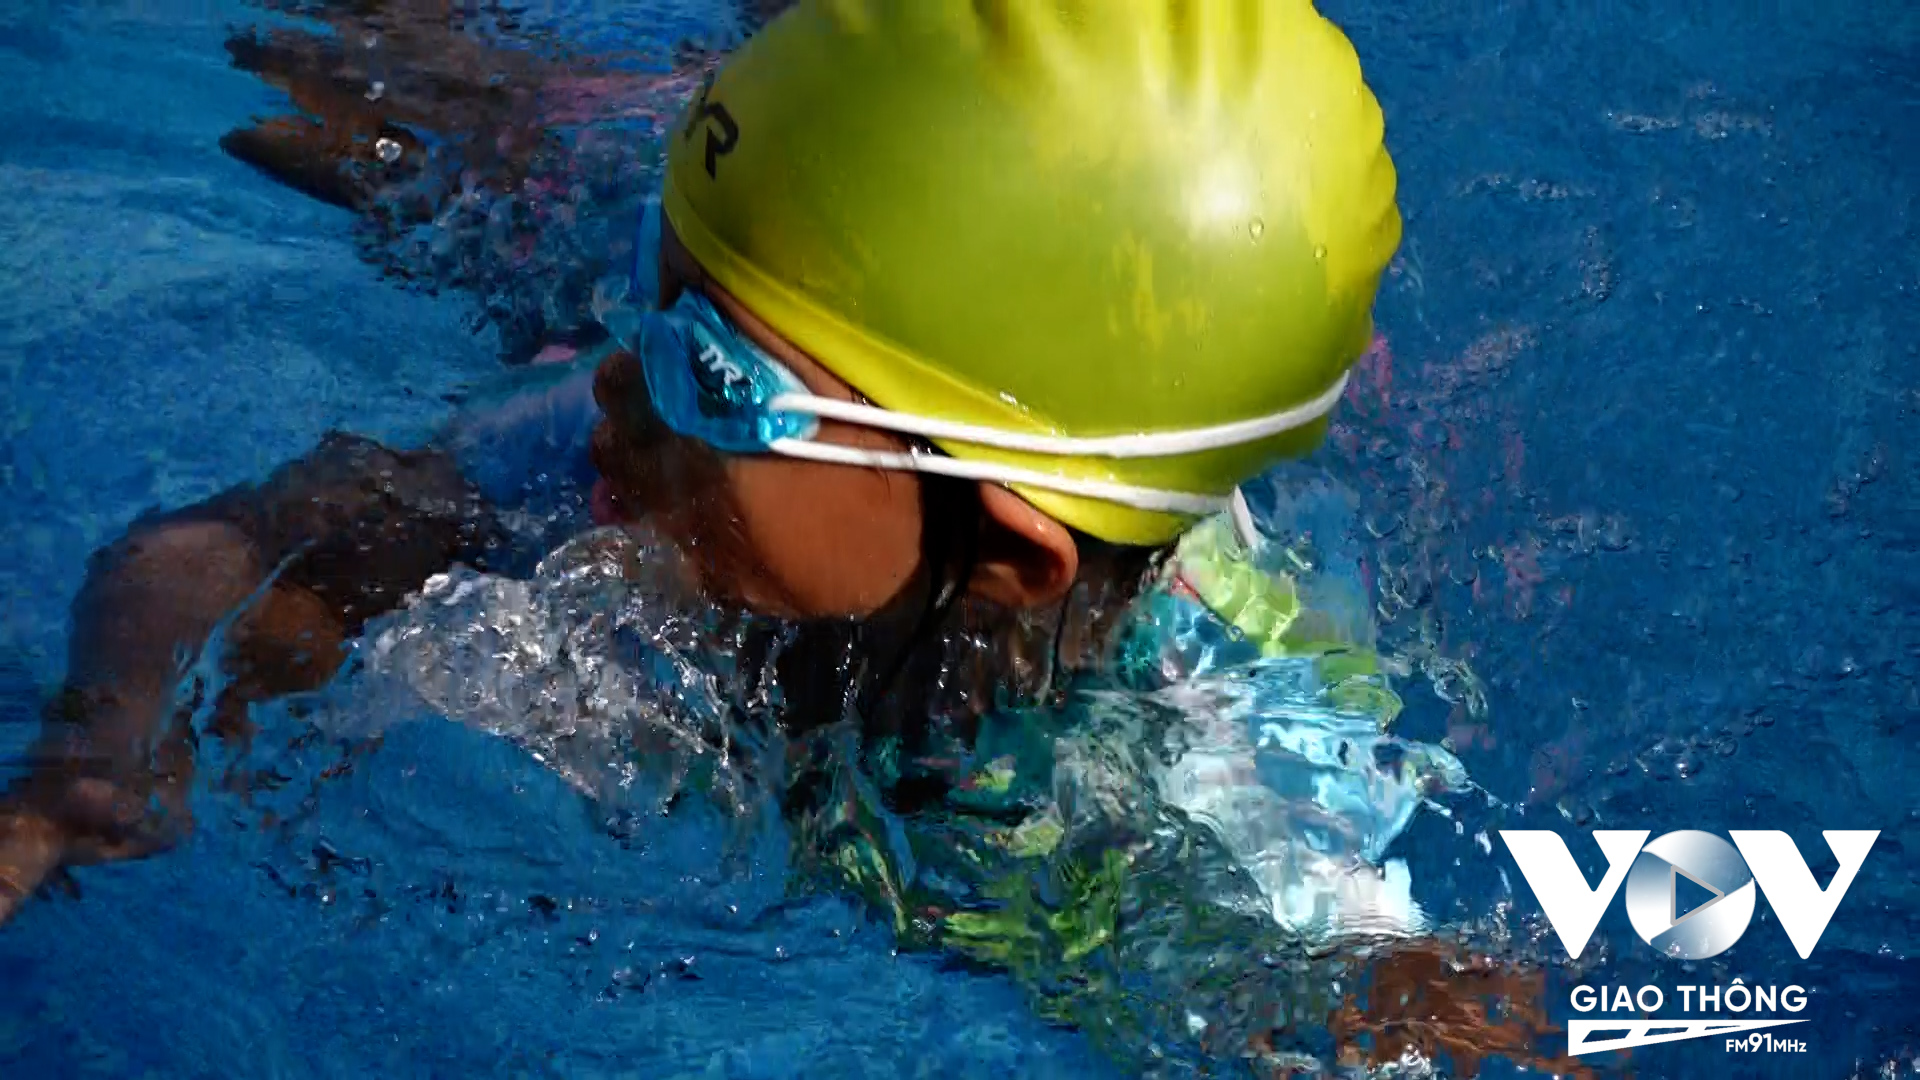 Hơn 1000 trẻ em khó khăn đã được anh Duy dạy bơi trong suốt hơn 6 năm qua...